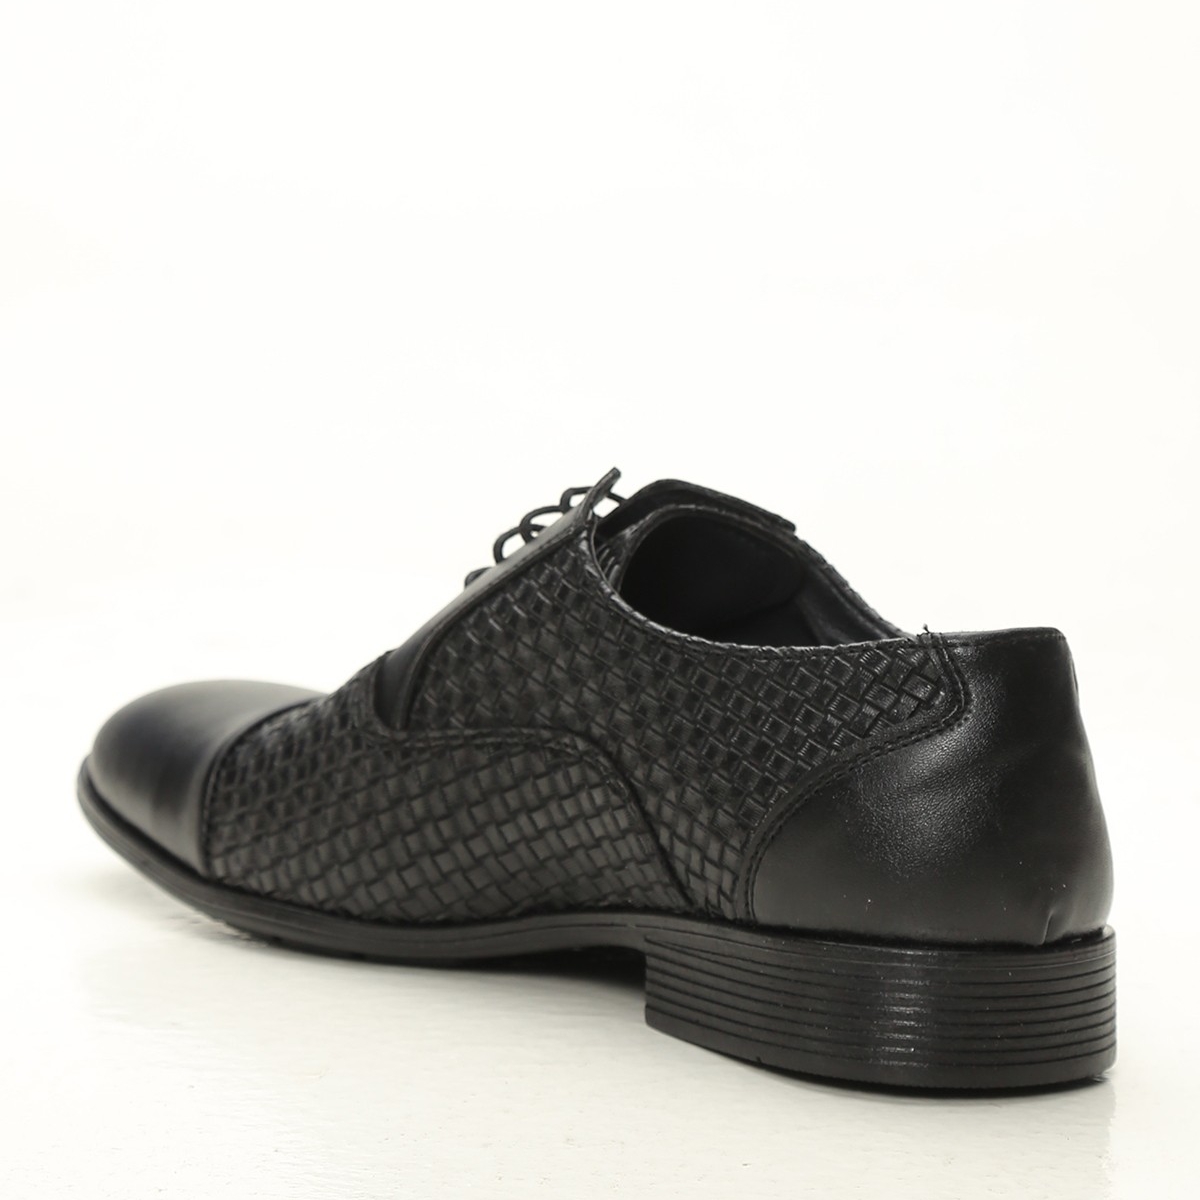 Flo Siyah Erkek Klasik Ayakkabı 1009-20-112006. 3